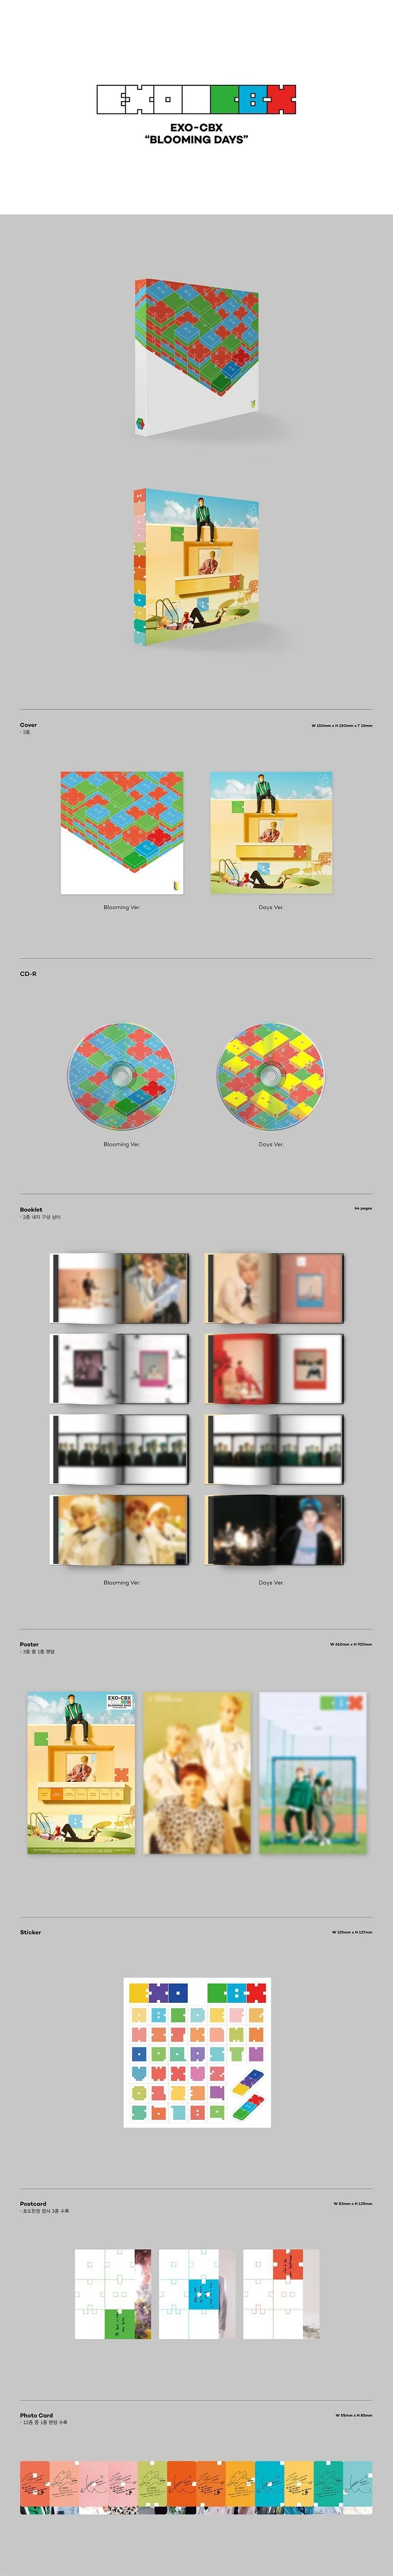 [MYKPOP]~ Официальный~ EXO CBX MINI#2: цветущие дни альбом CD, KPOP Fans Коллекция-SA19081702